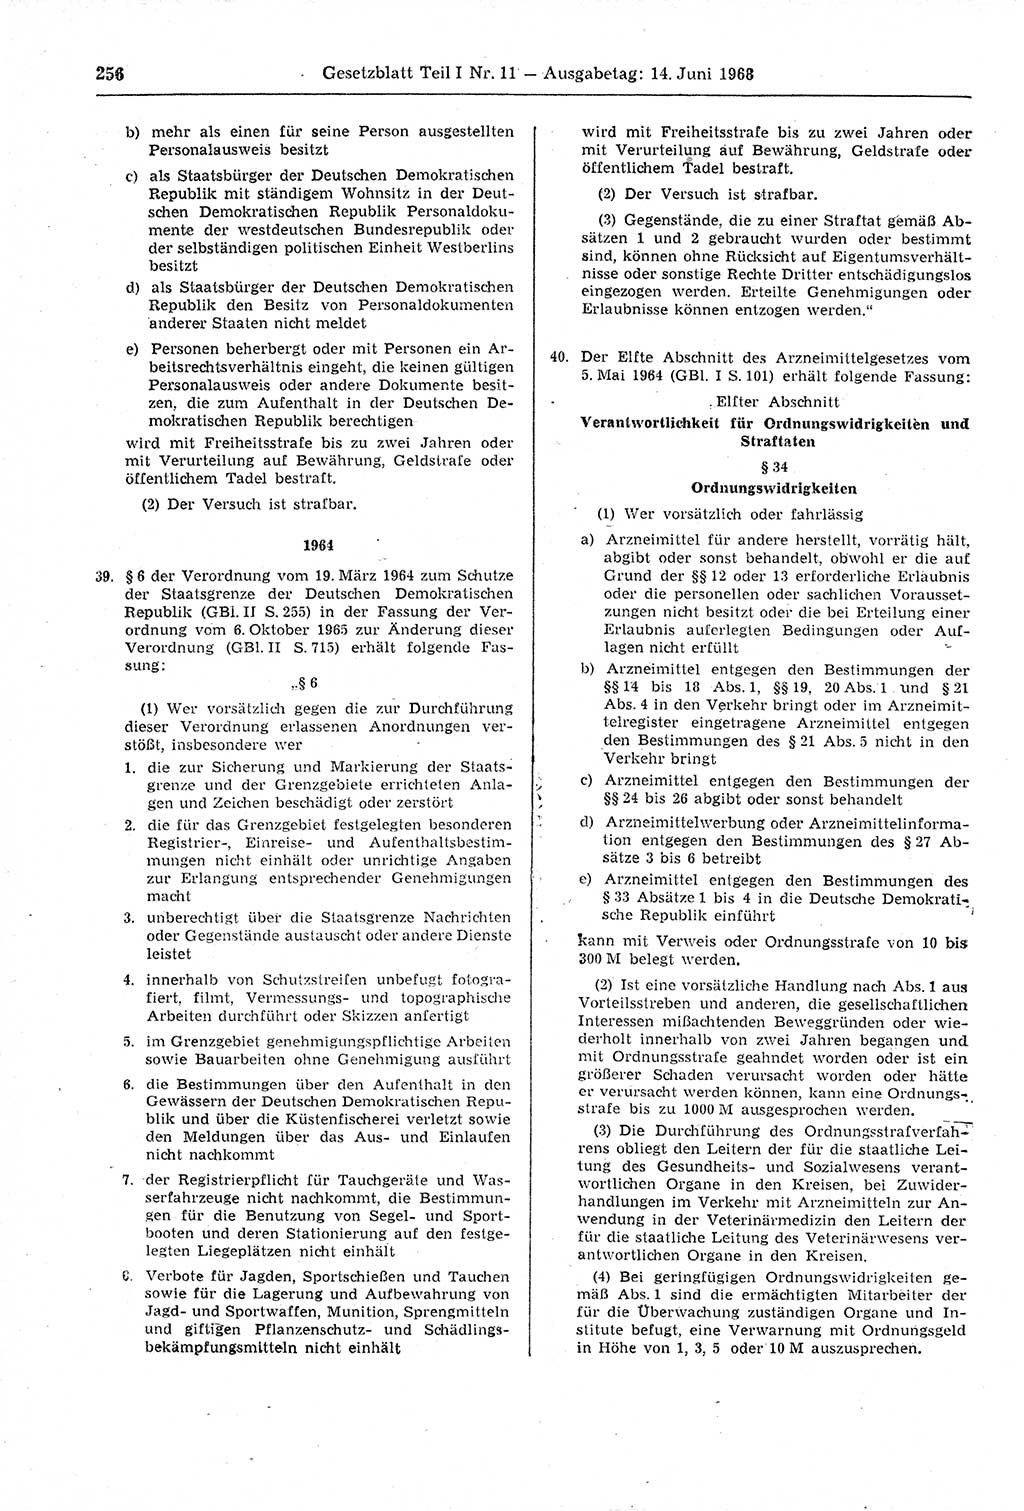 Gesetzblatt (GBl.) der Deutschen Demokratischen Republik (DDR) Teil Ⅰ 1968, Seite 256 (GBl. DDR Ⅰ 1968, S. 256)